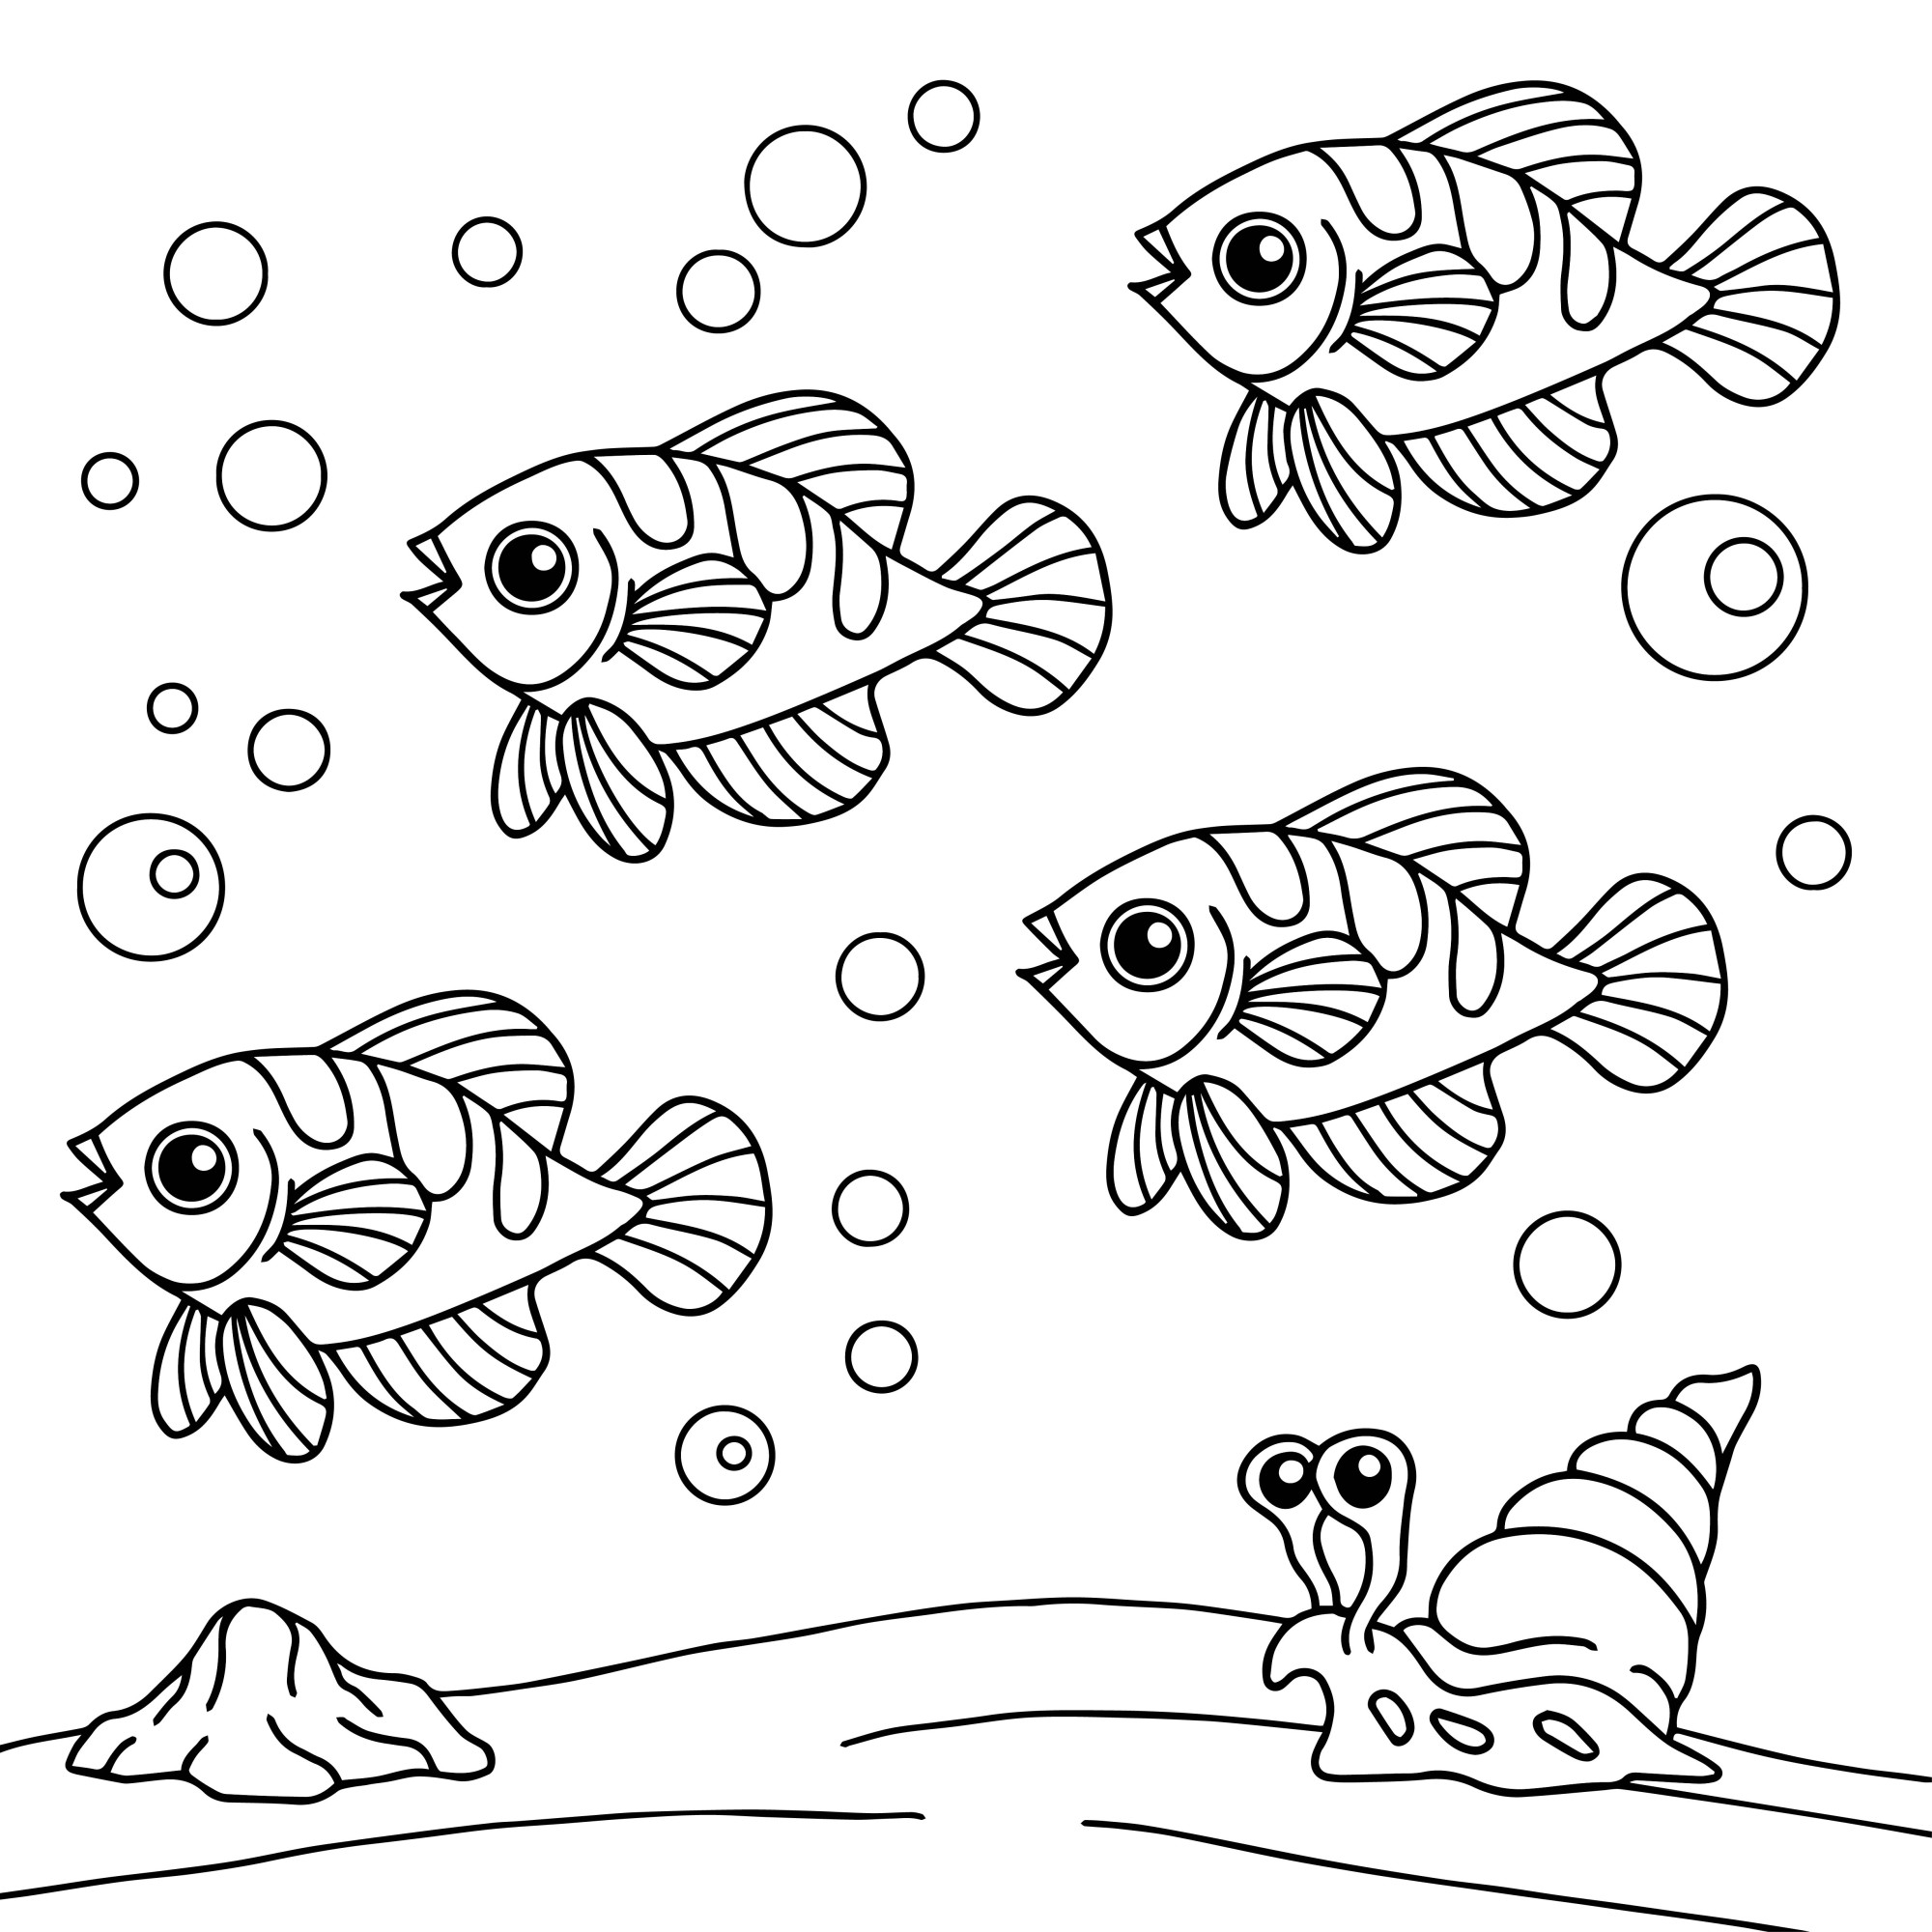 Раскраска для детей: рыбки «Подводный аттракцион»